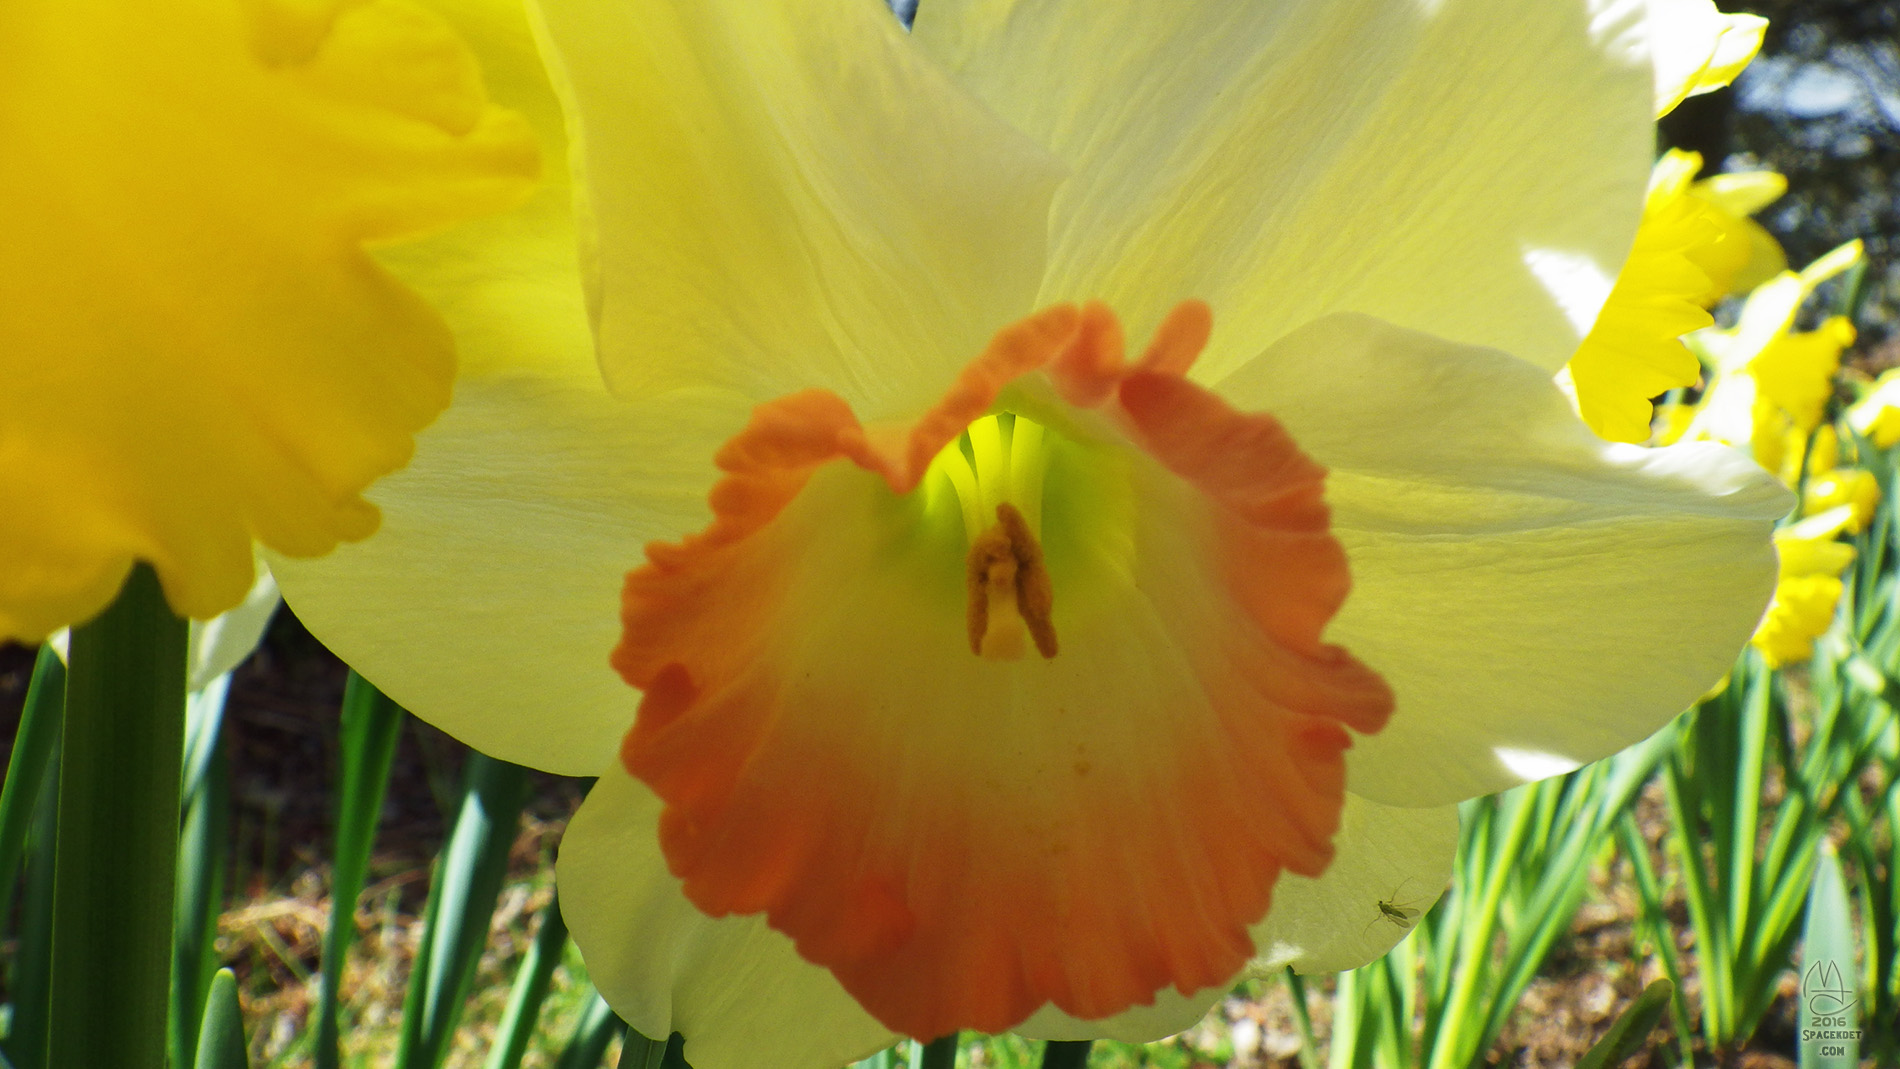 Daffodil.